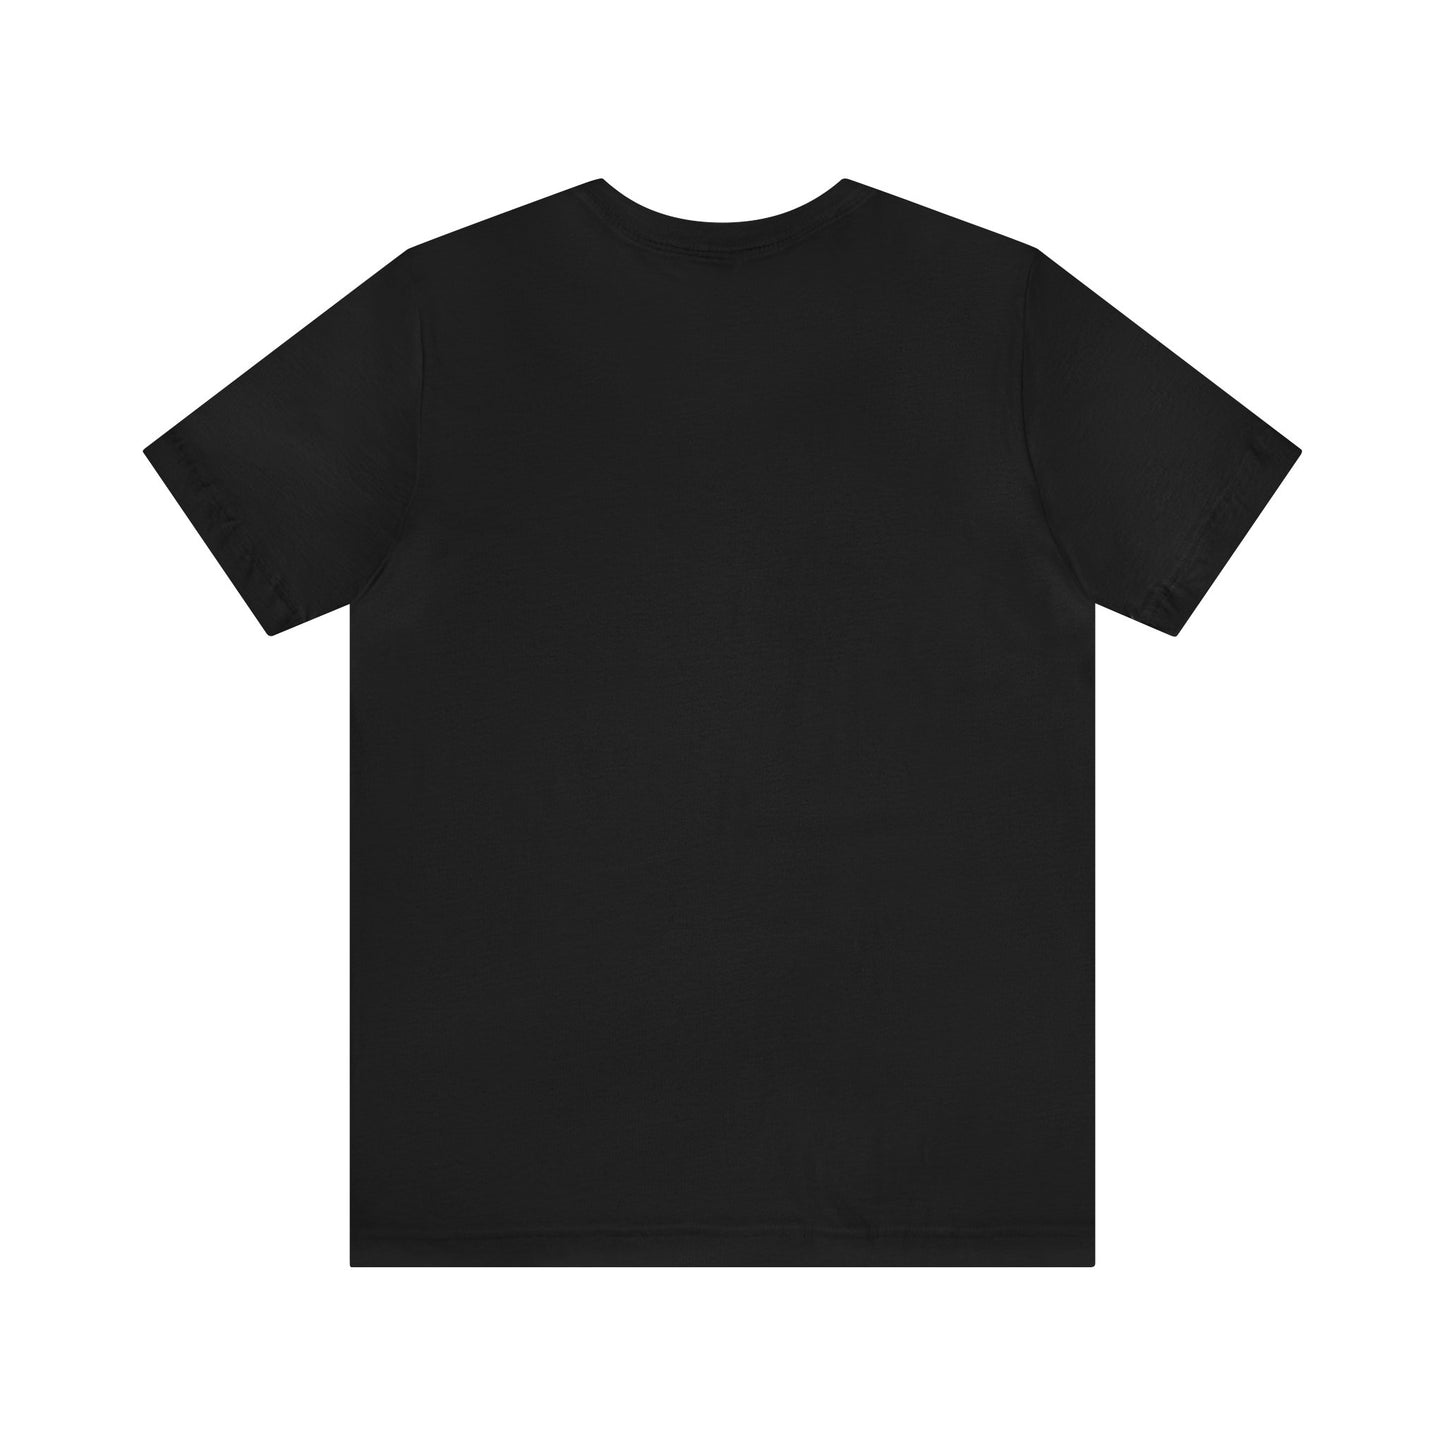 Cold War Kids Design Unisex Jersey Short Sleeve Tee Shirt